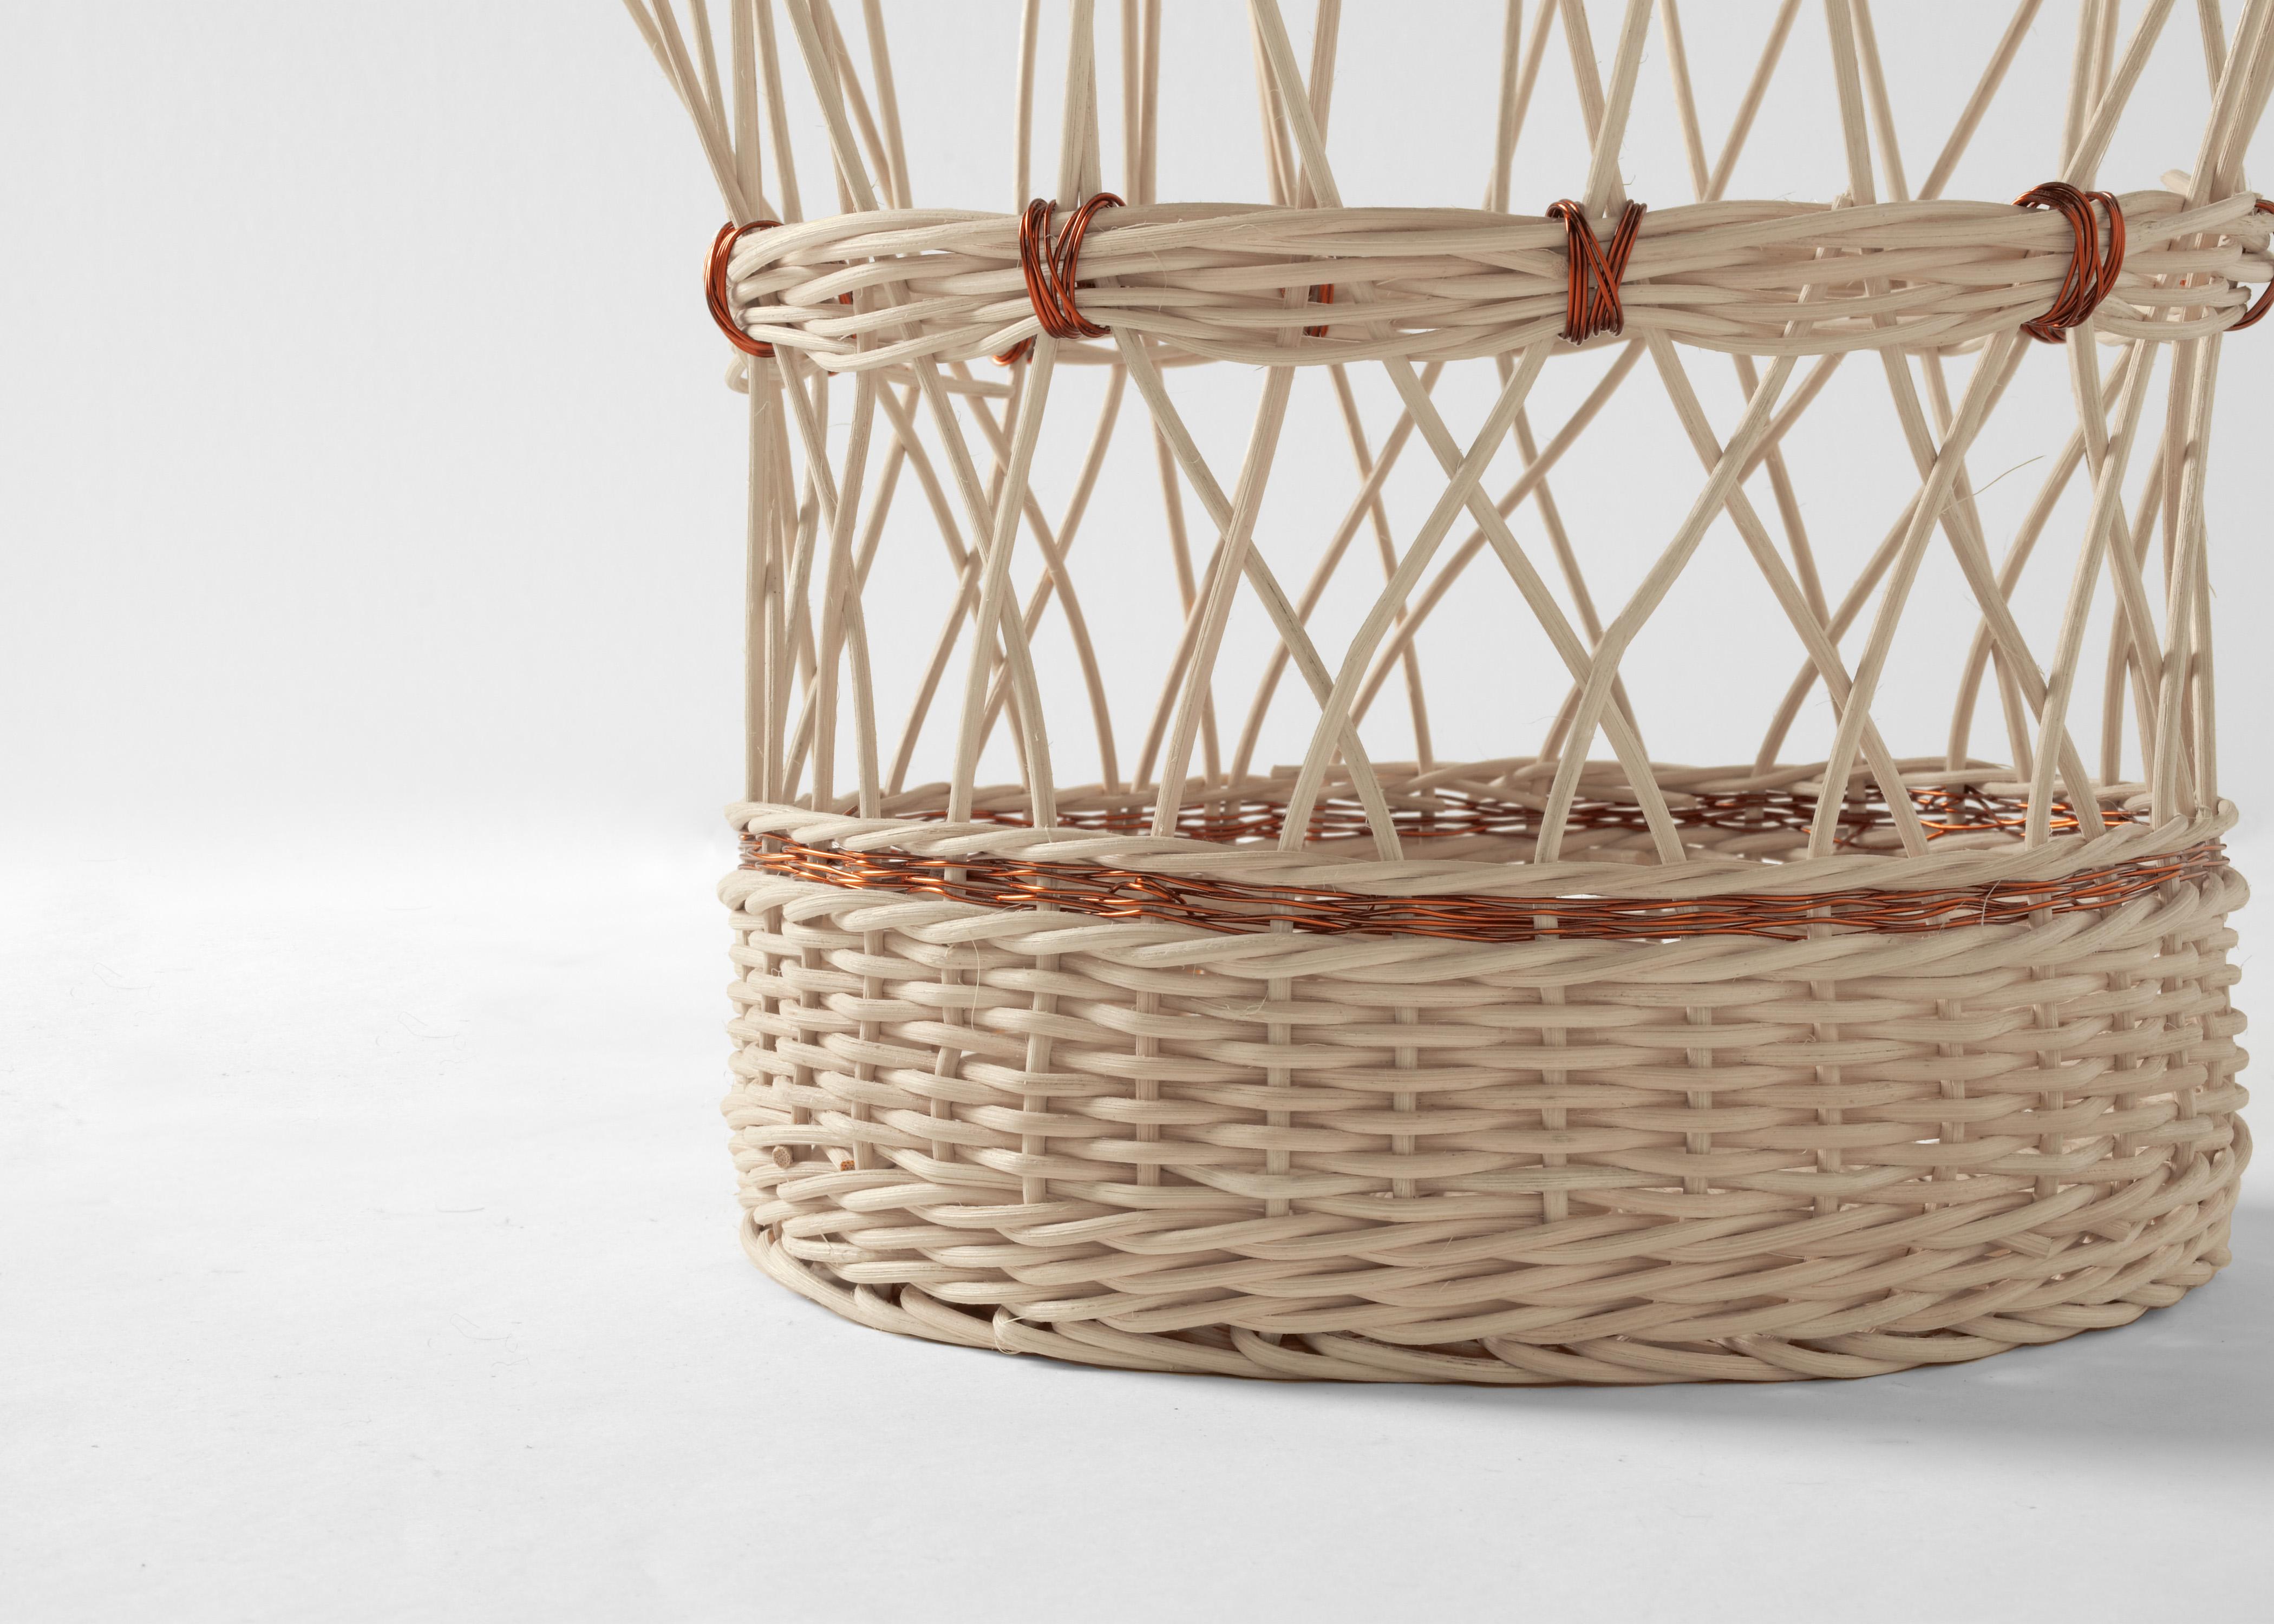 Copper Voodoo Basket by Edizione Limitata